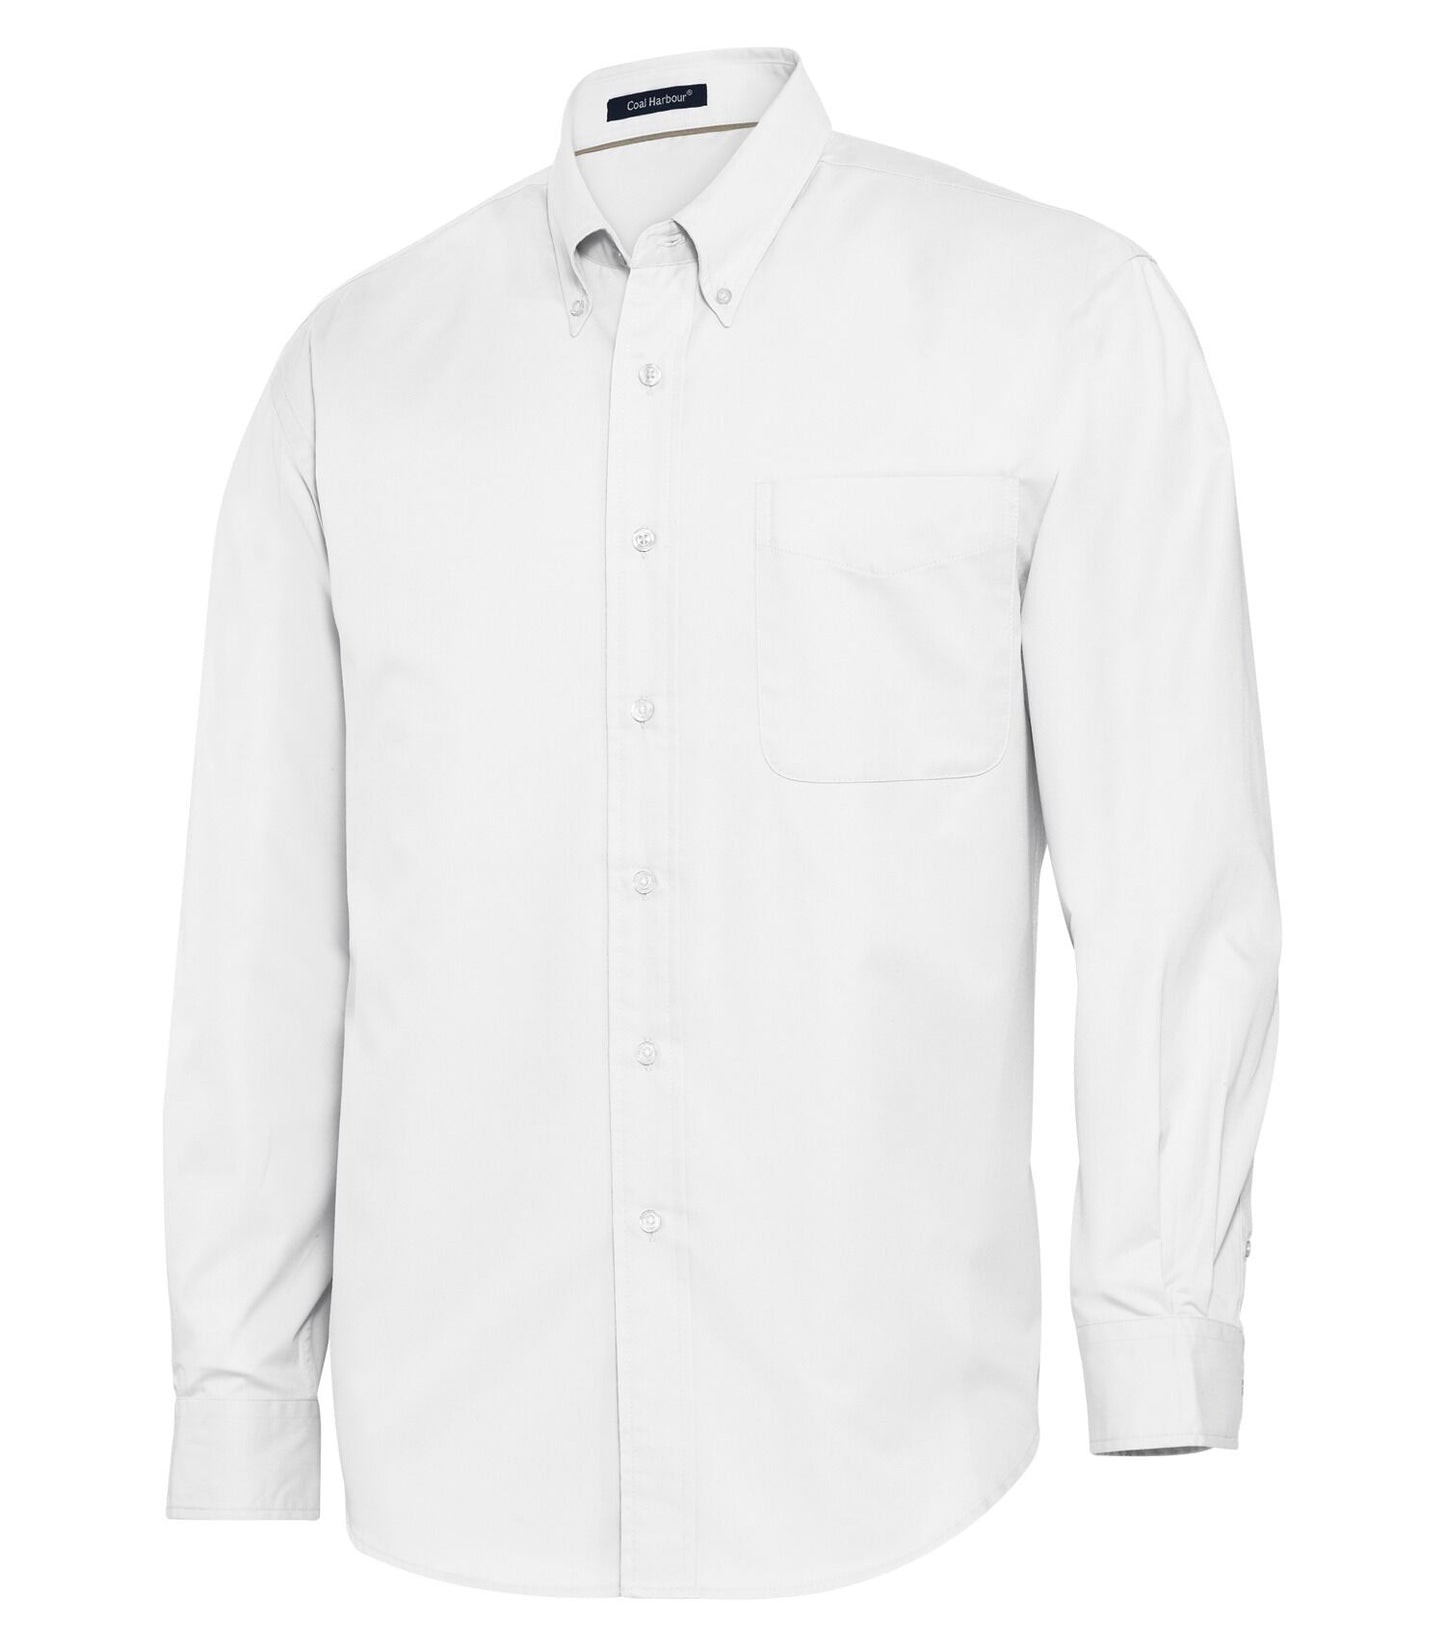 Camisa tejida de manga larga Harbor-D610 de carbón para hombres